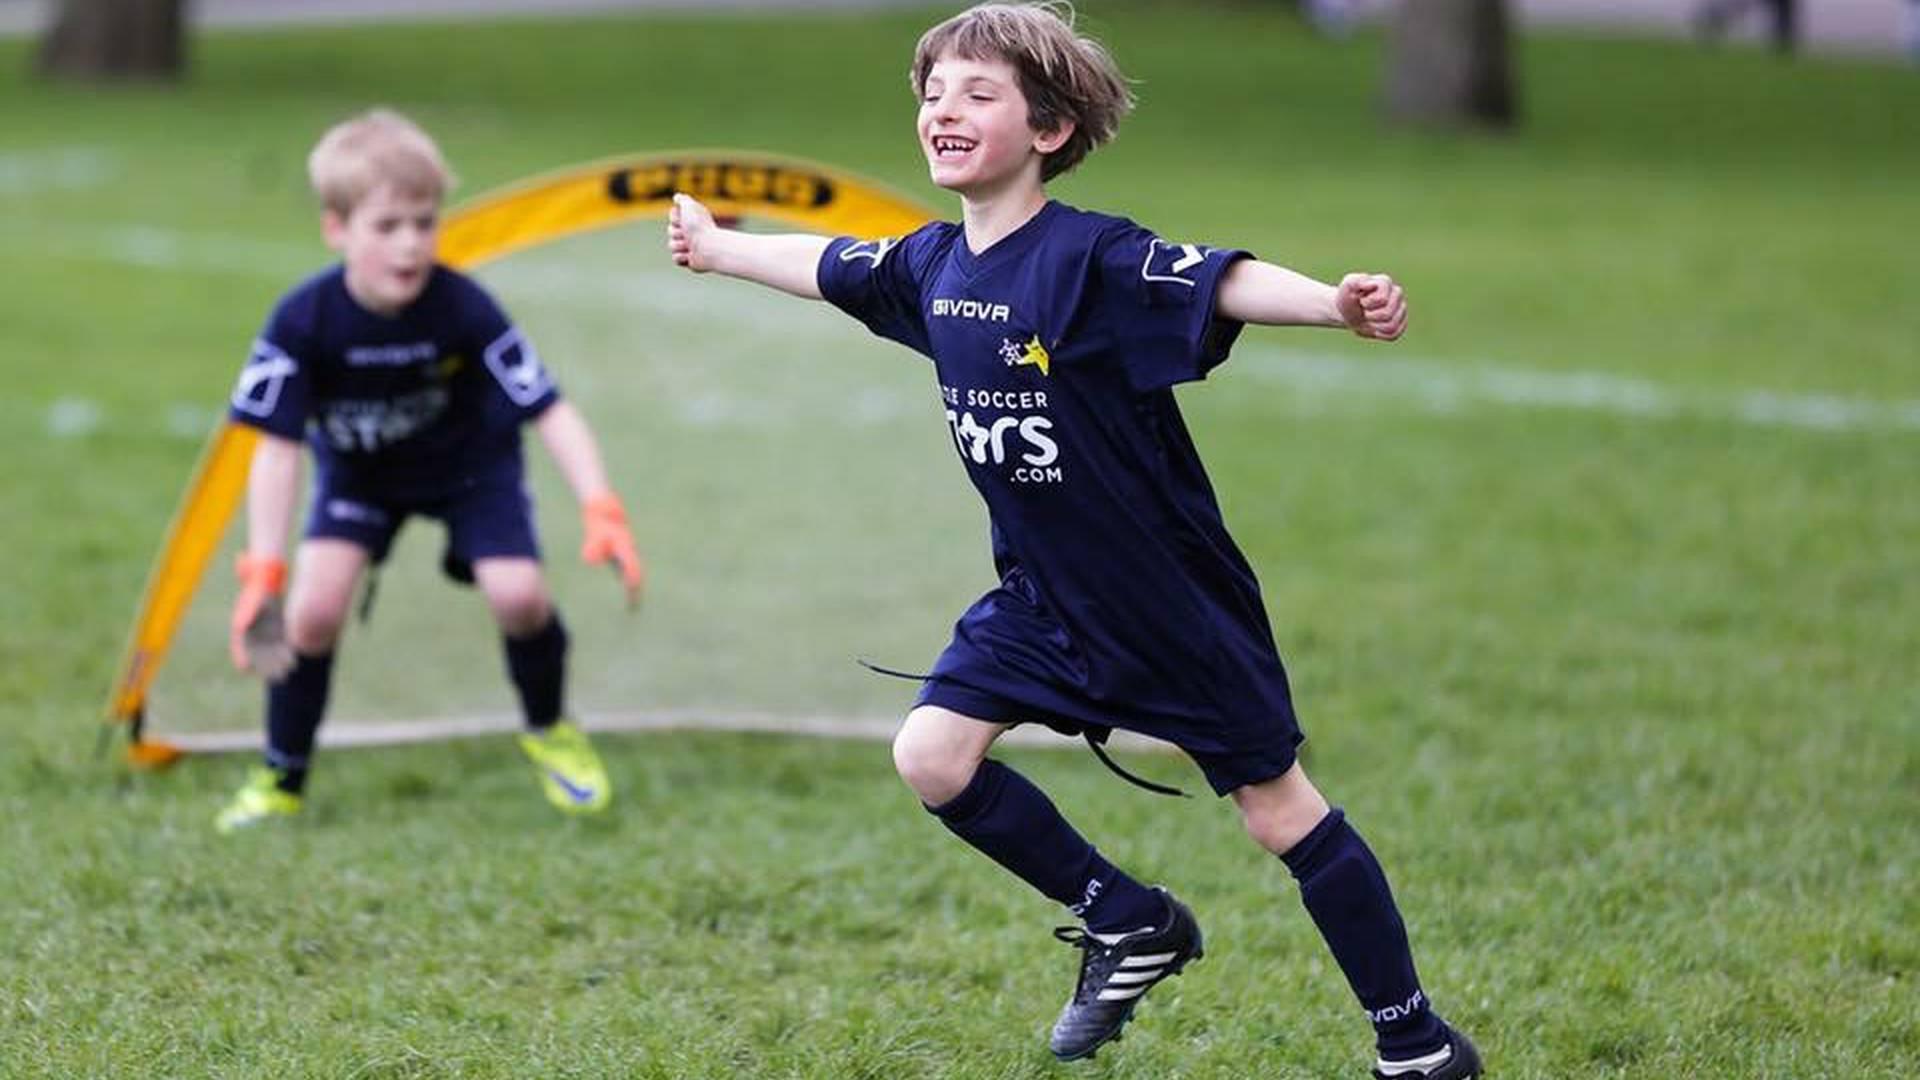 Little Soccer Stars photo